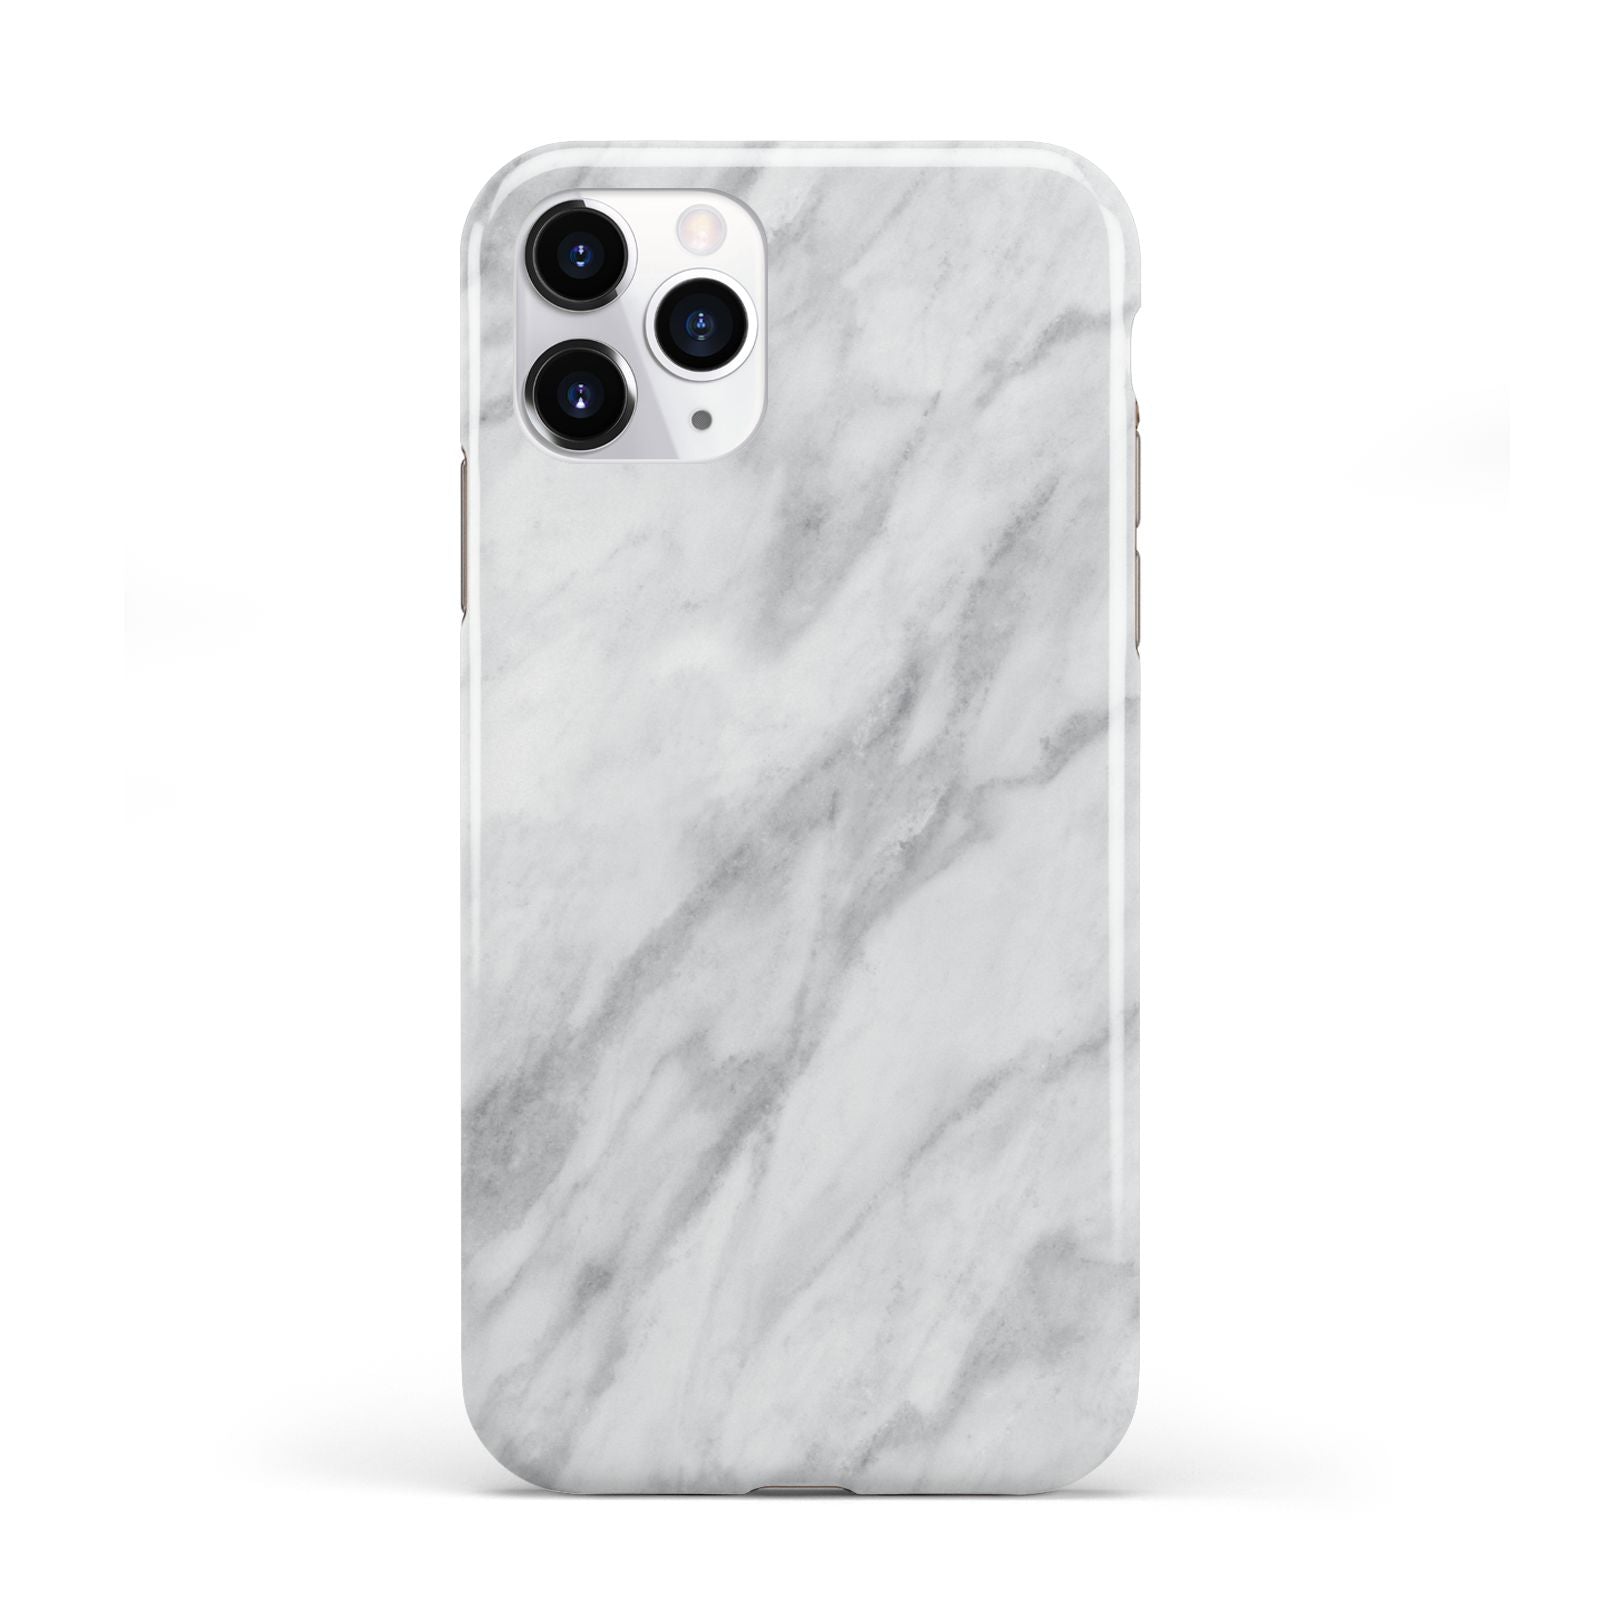 Faux Marble Effect Italian iPhone 11 Pro 3D Tough Case